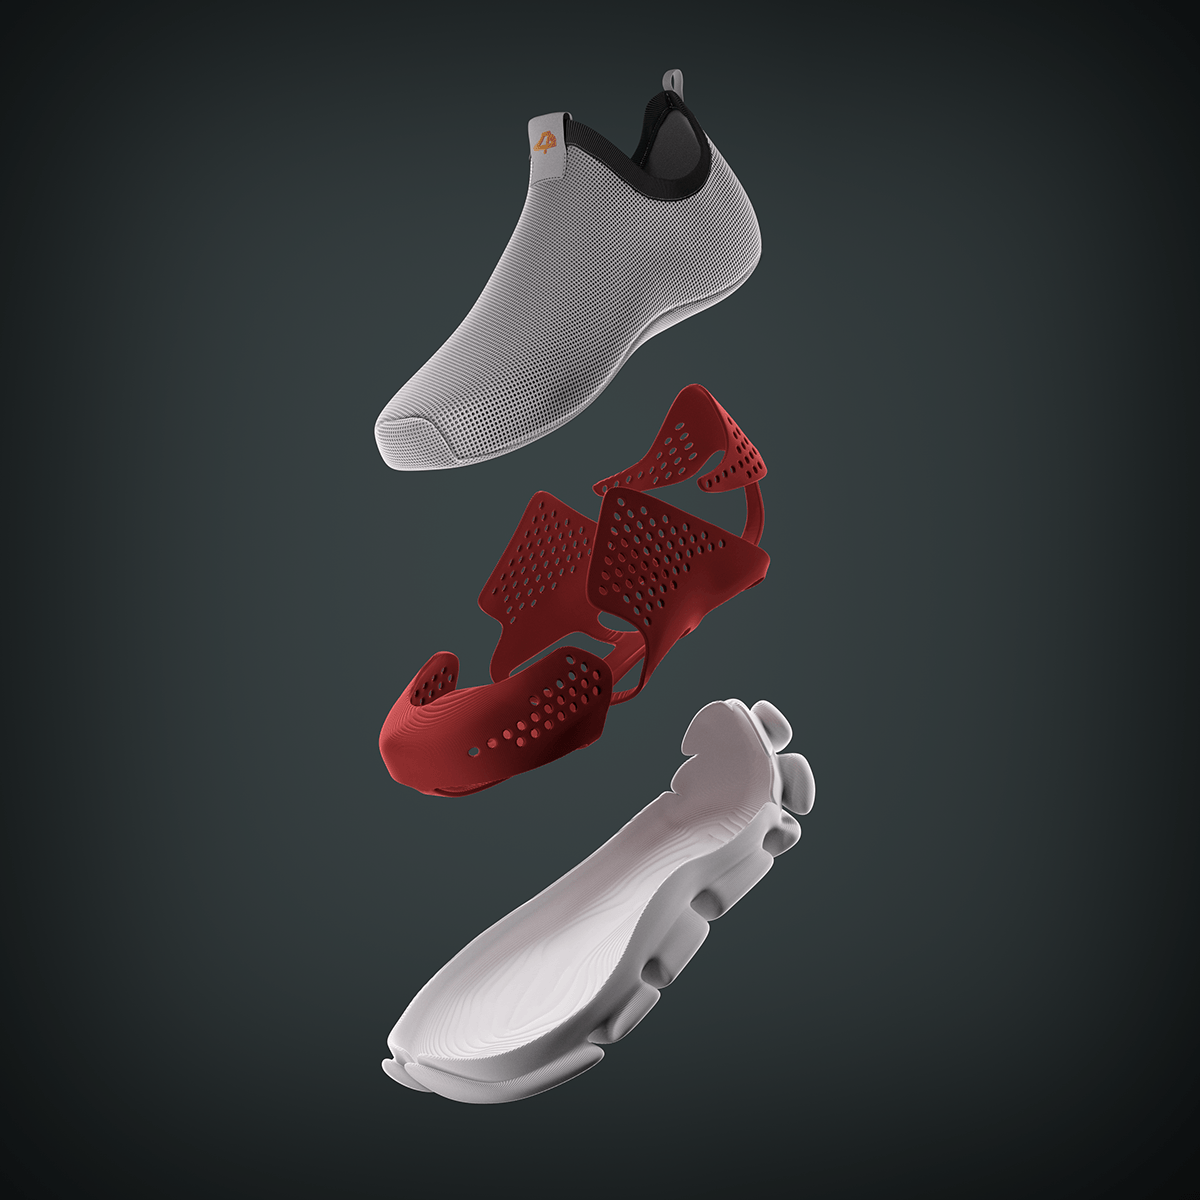 product design  3dprint 3d modeling shoe design innovation